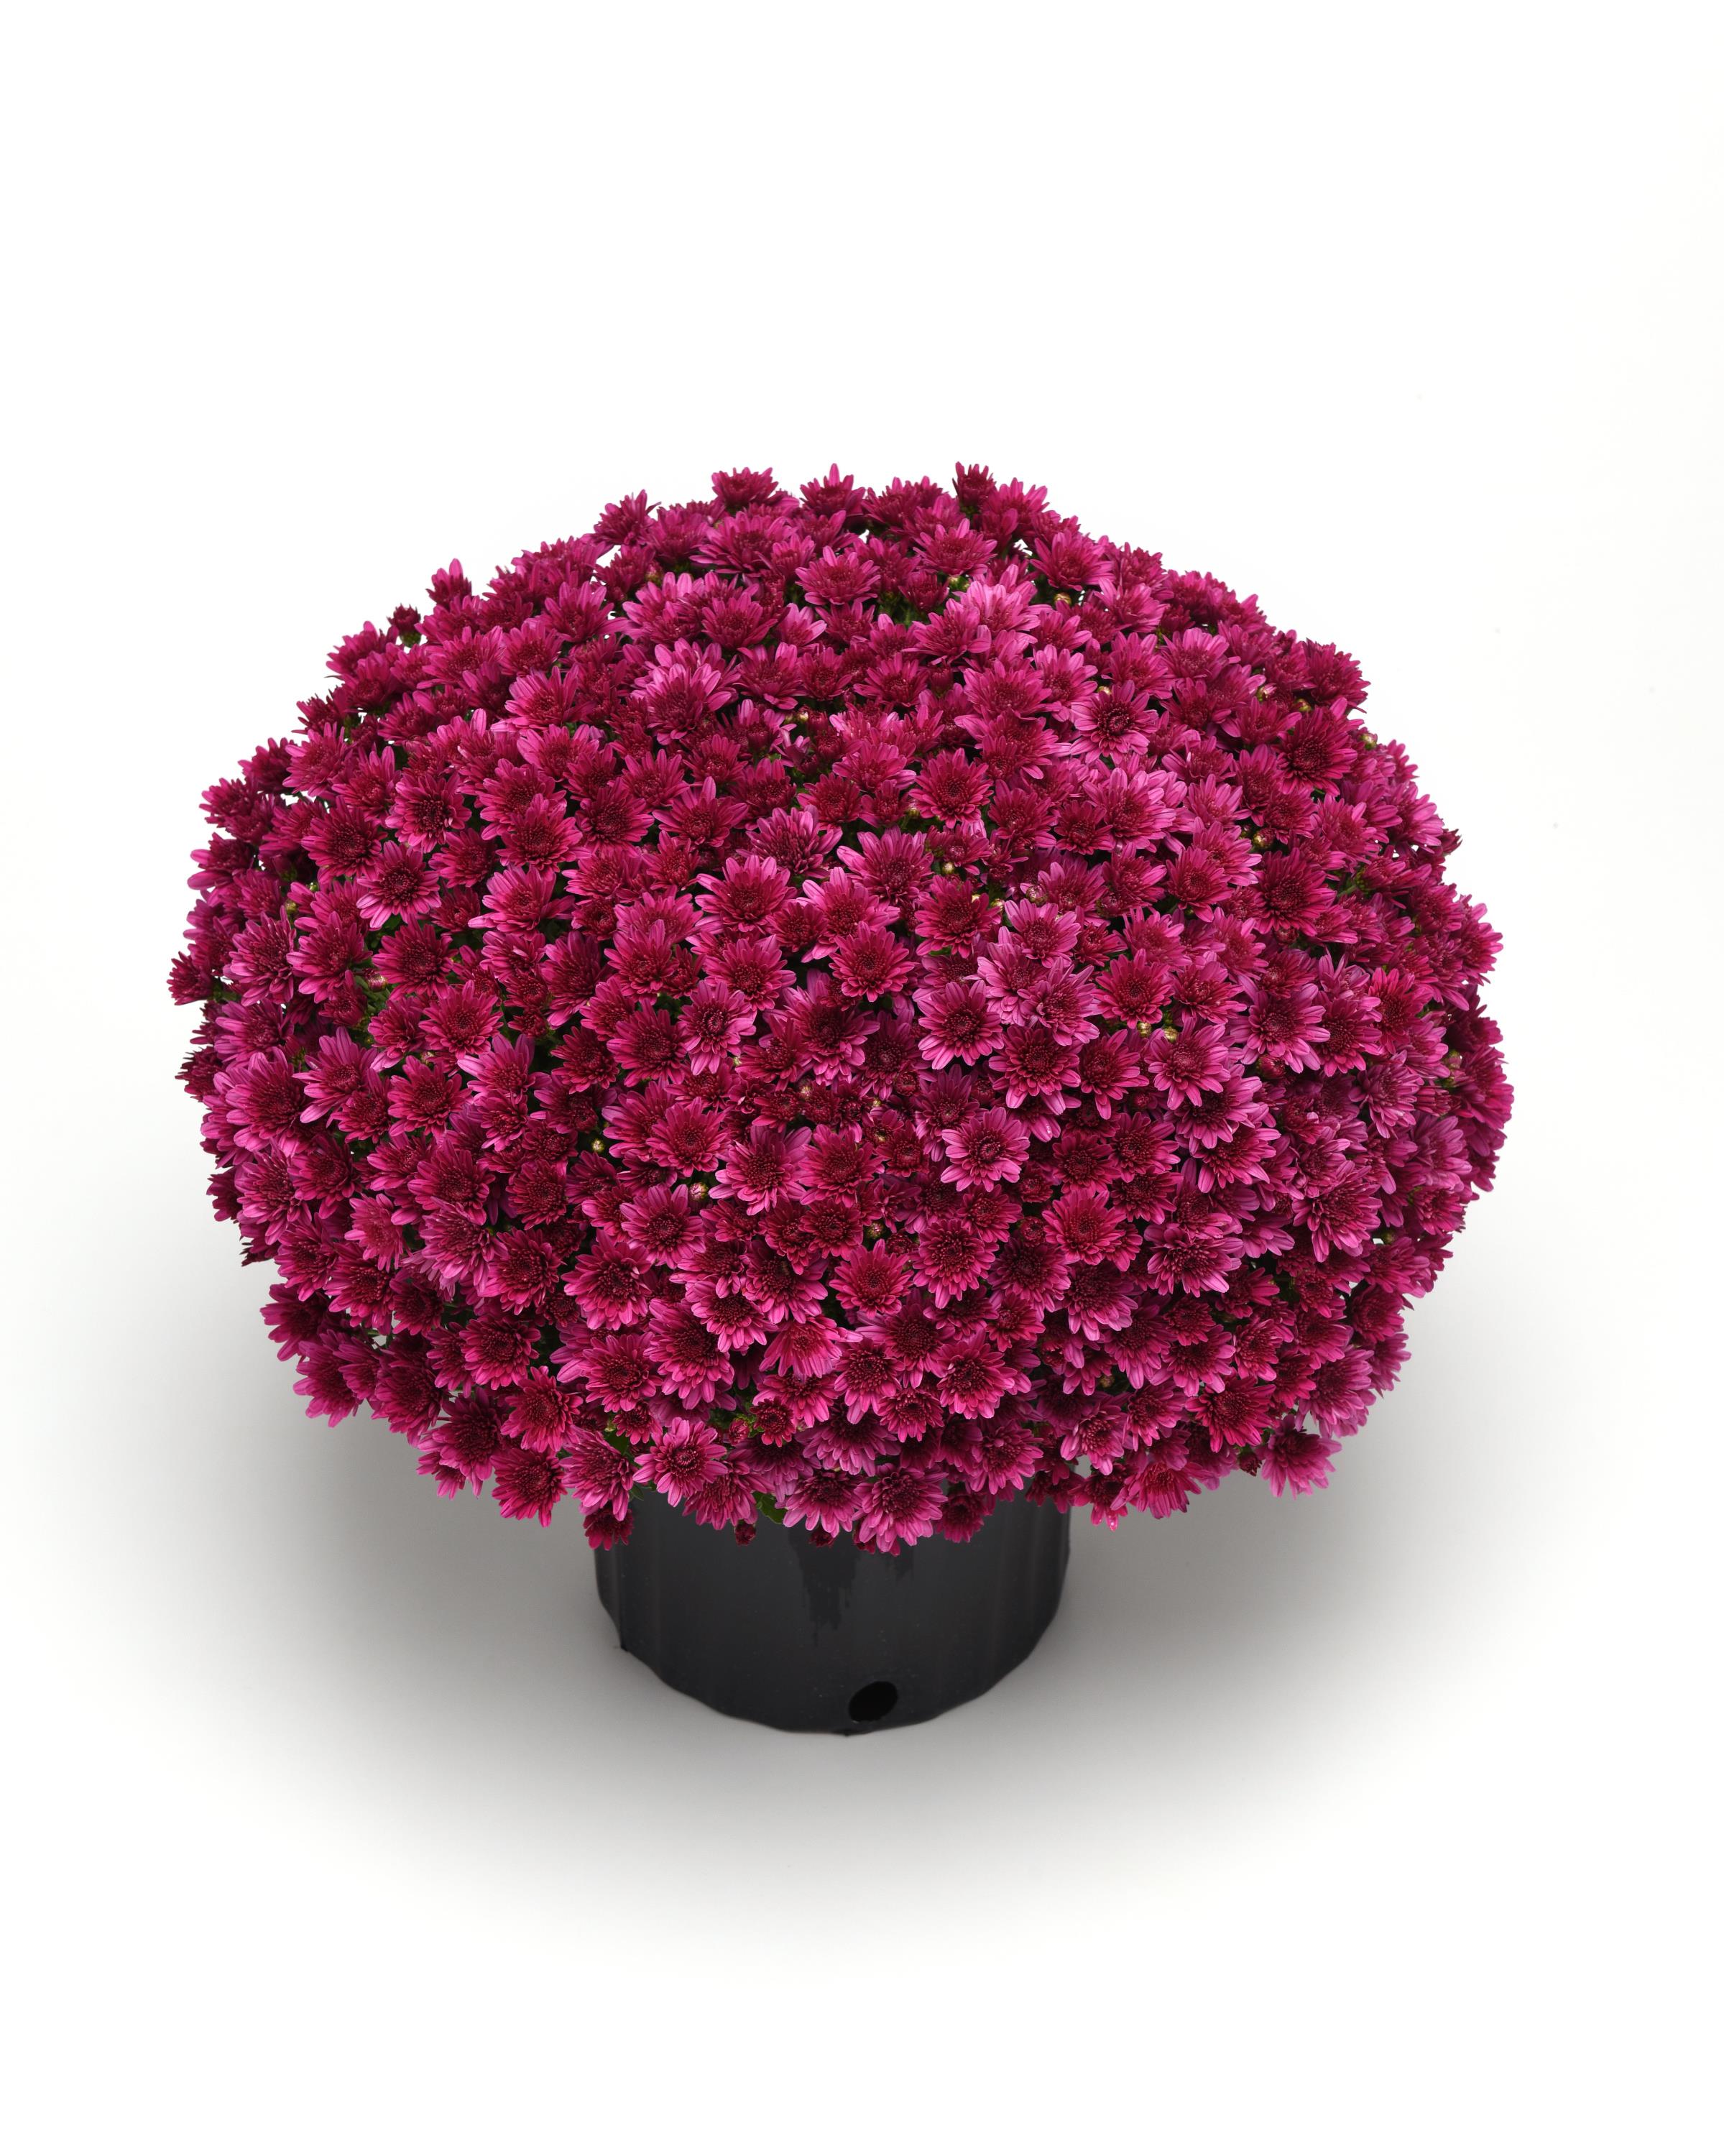 Mum chrysanthemum x morifolium 'Milkshake Cherry Purple'